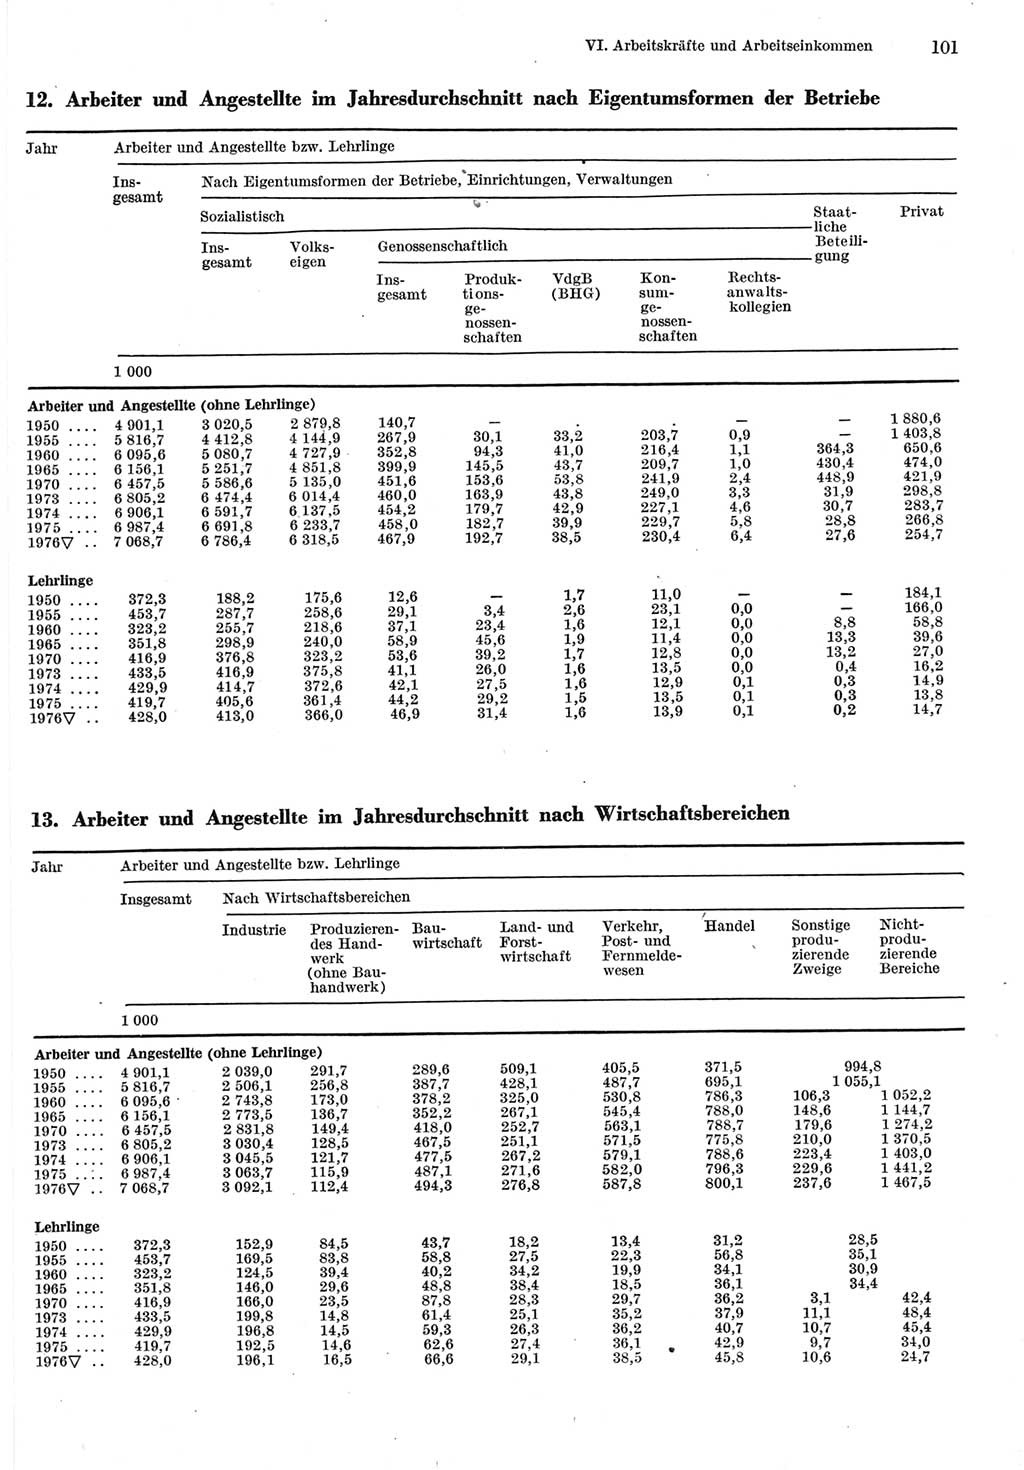 Statistisches Jahrbuch der Deutschen Demokratischen Republik (DDR) 1977, Seite 101 (Stat. Jb. DDR 1977, S. 101)